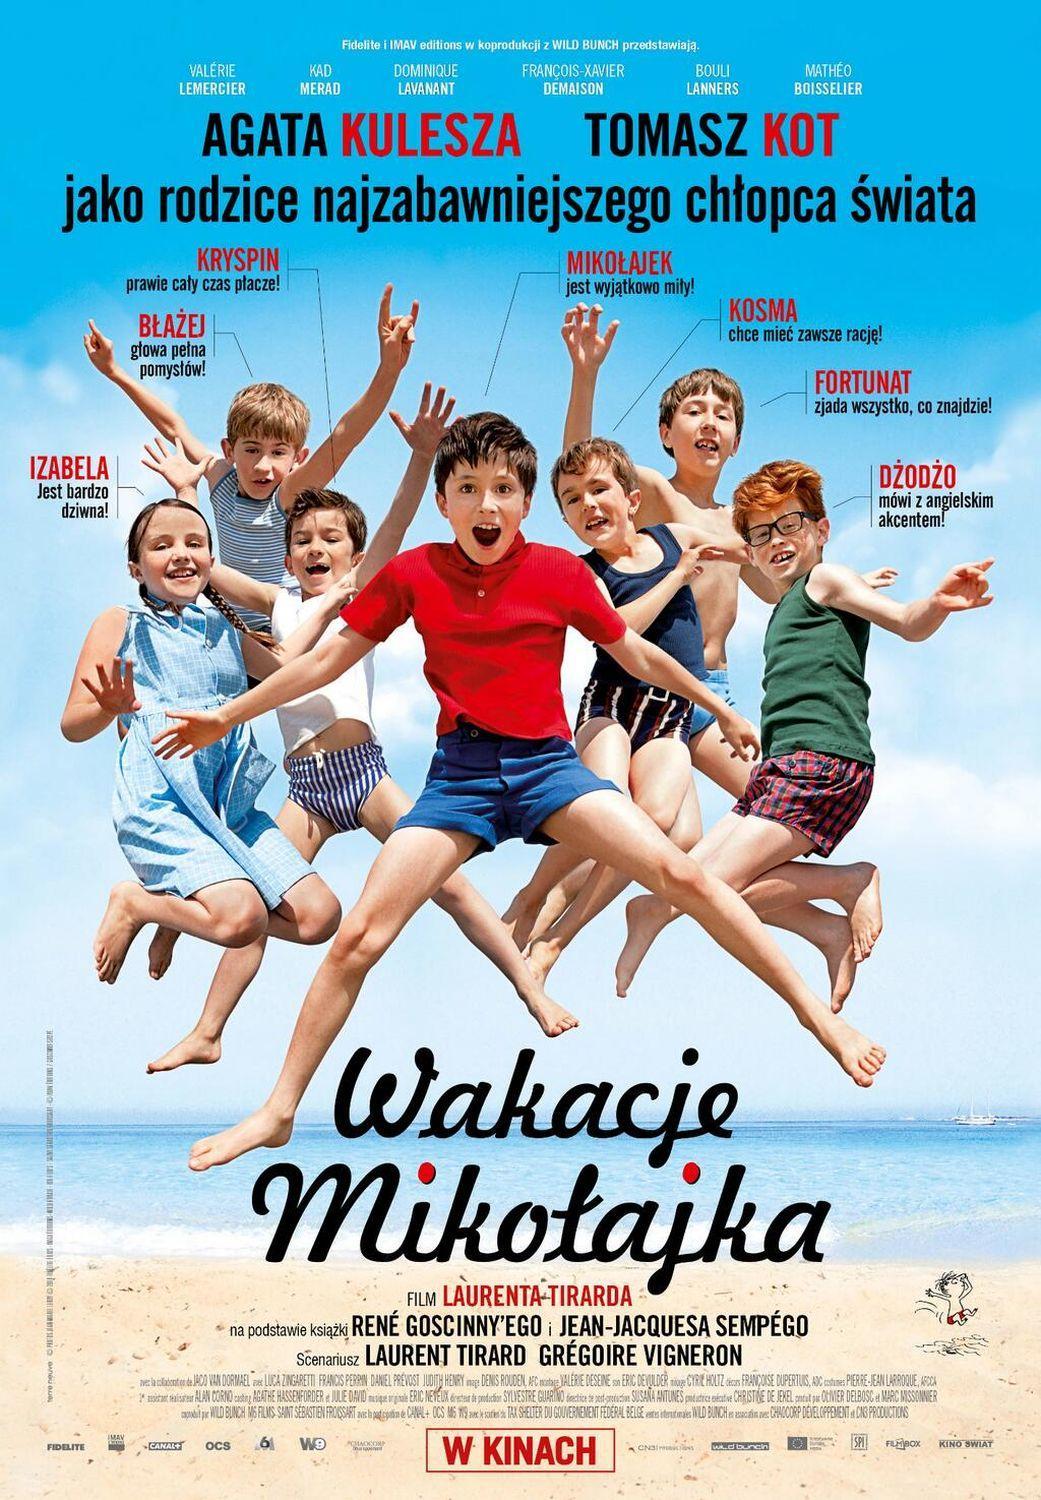 Постер фильма Каникулы маленького Николя | Les vacances du petit Nicolas